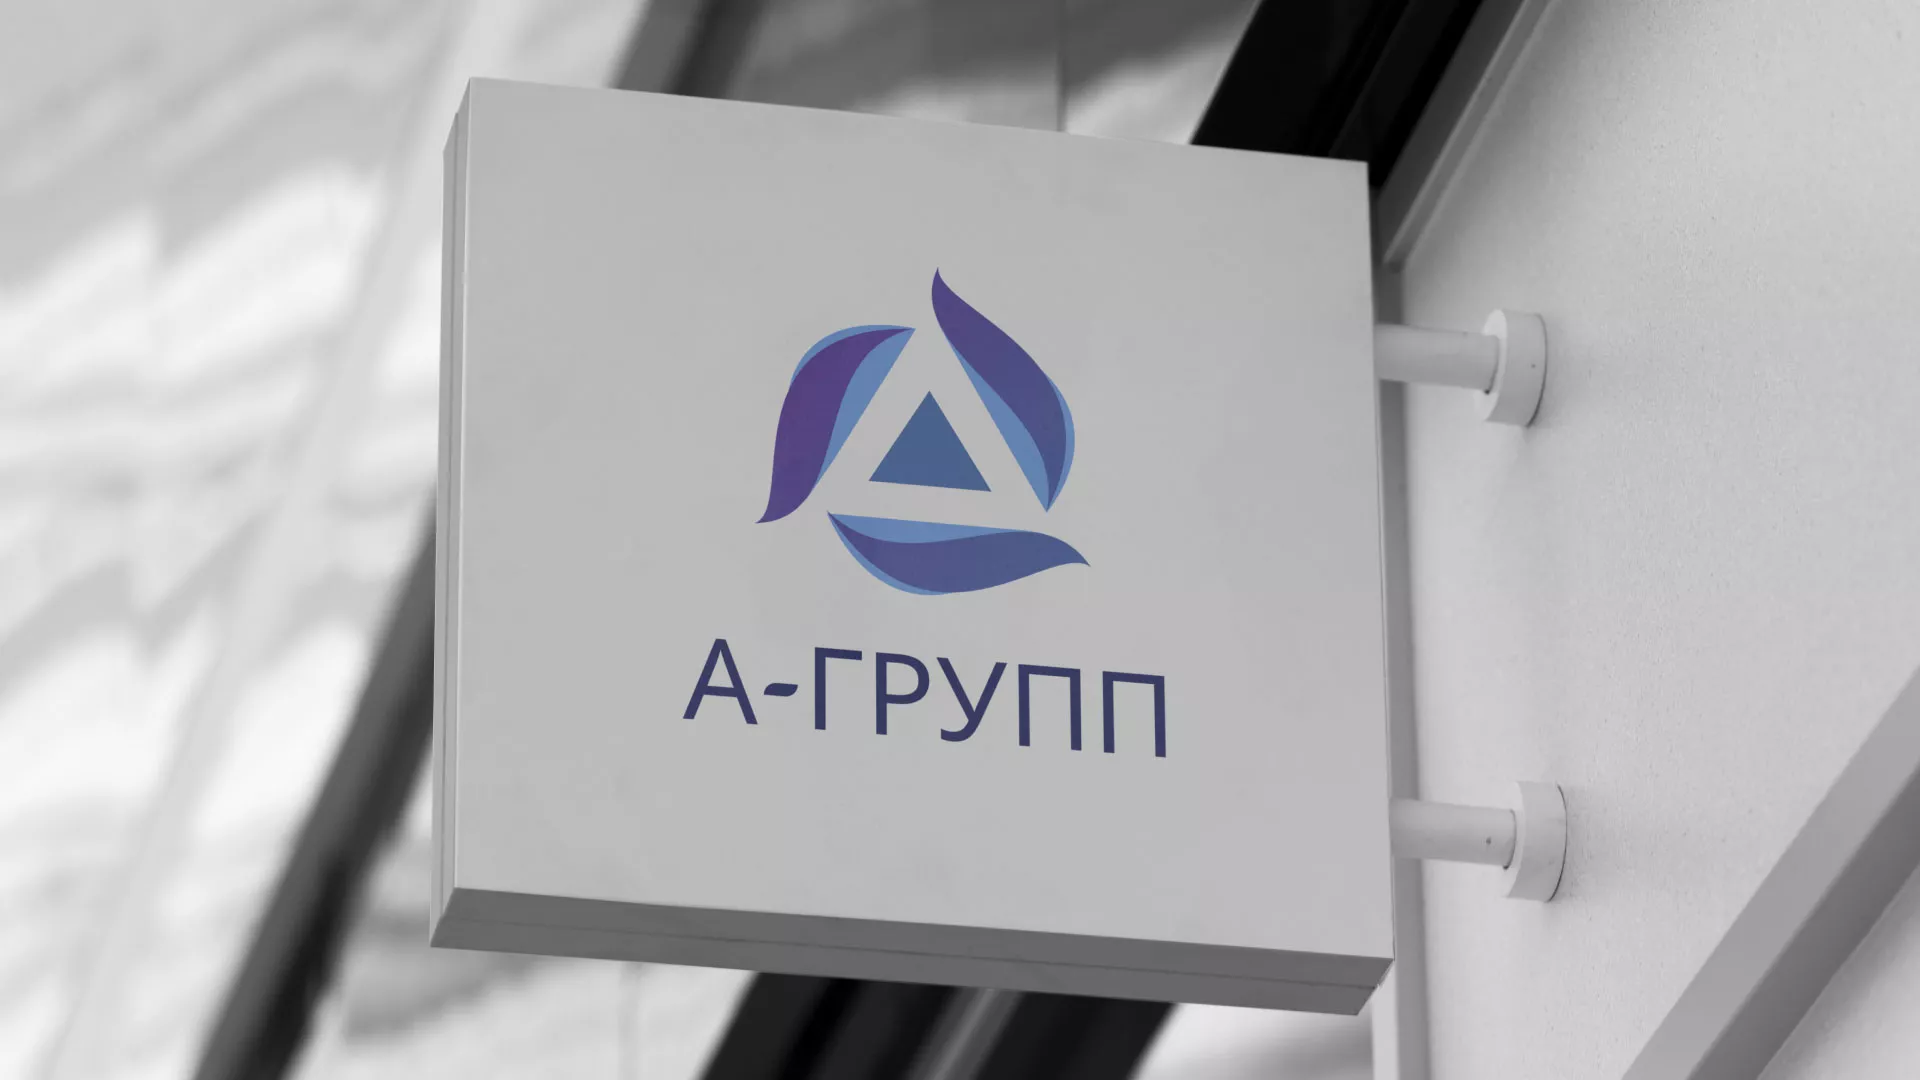 Создание логотипа компании «А-ГРУПП» в Усть-Куте